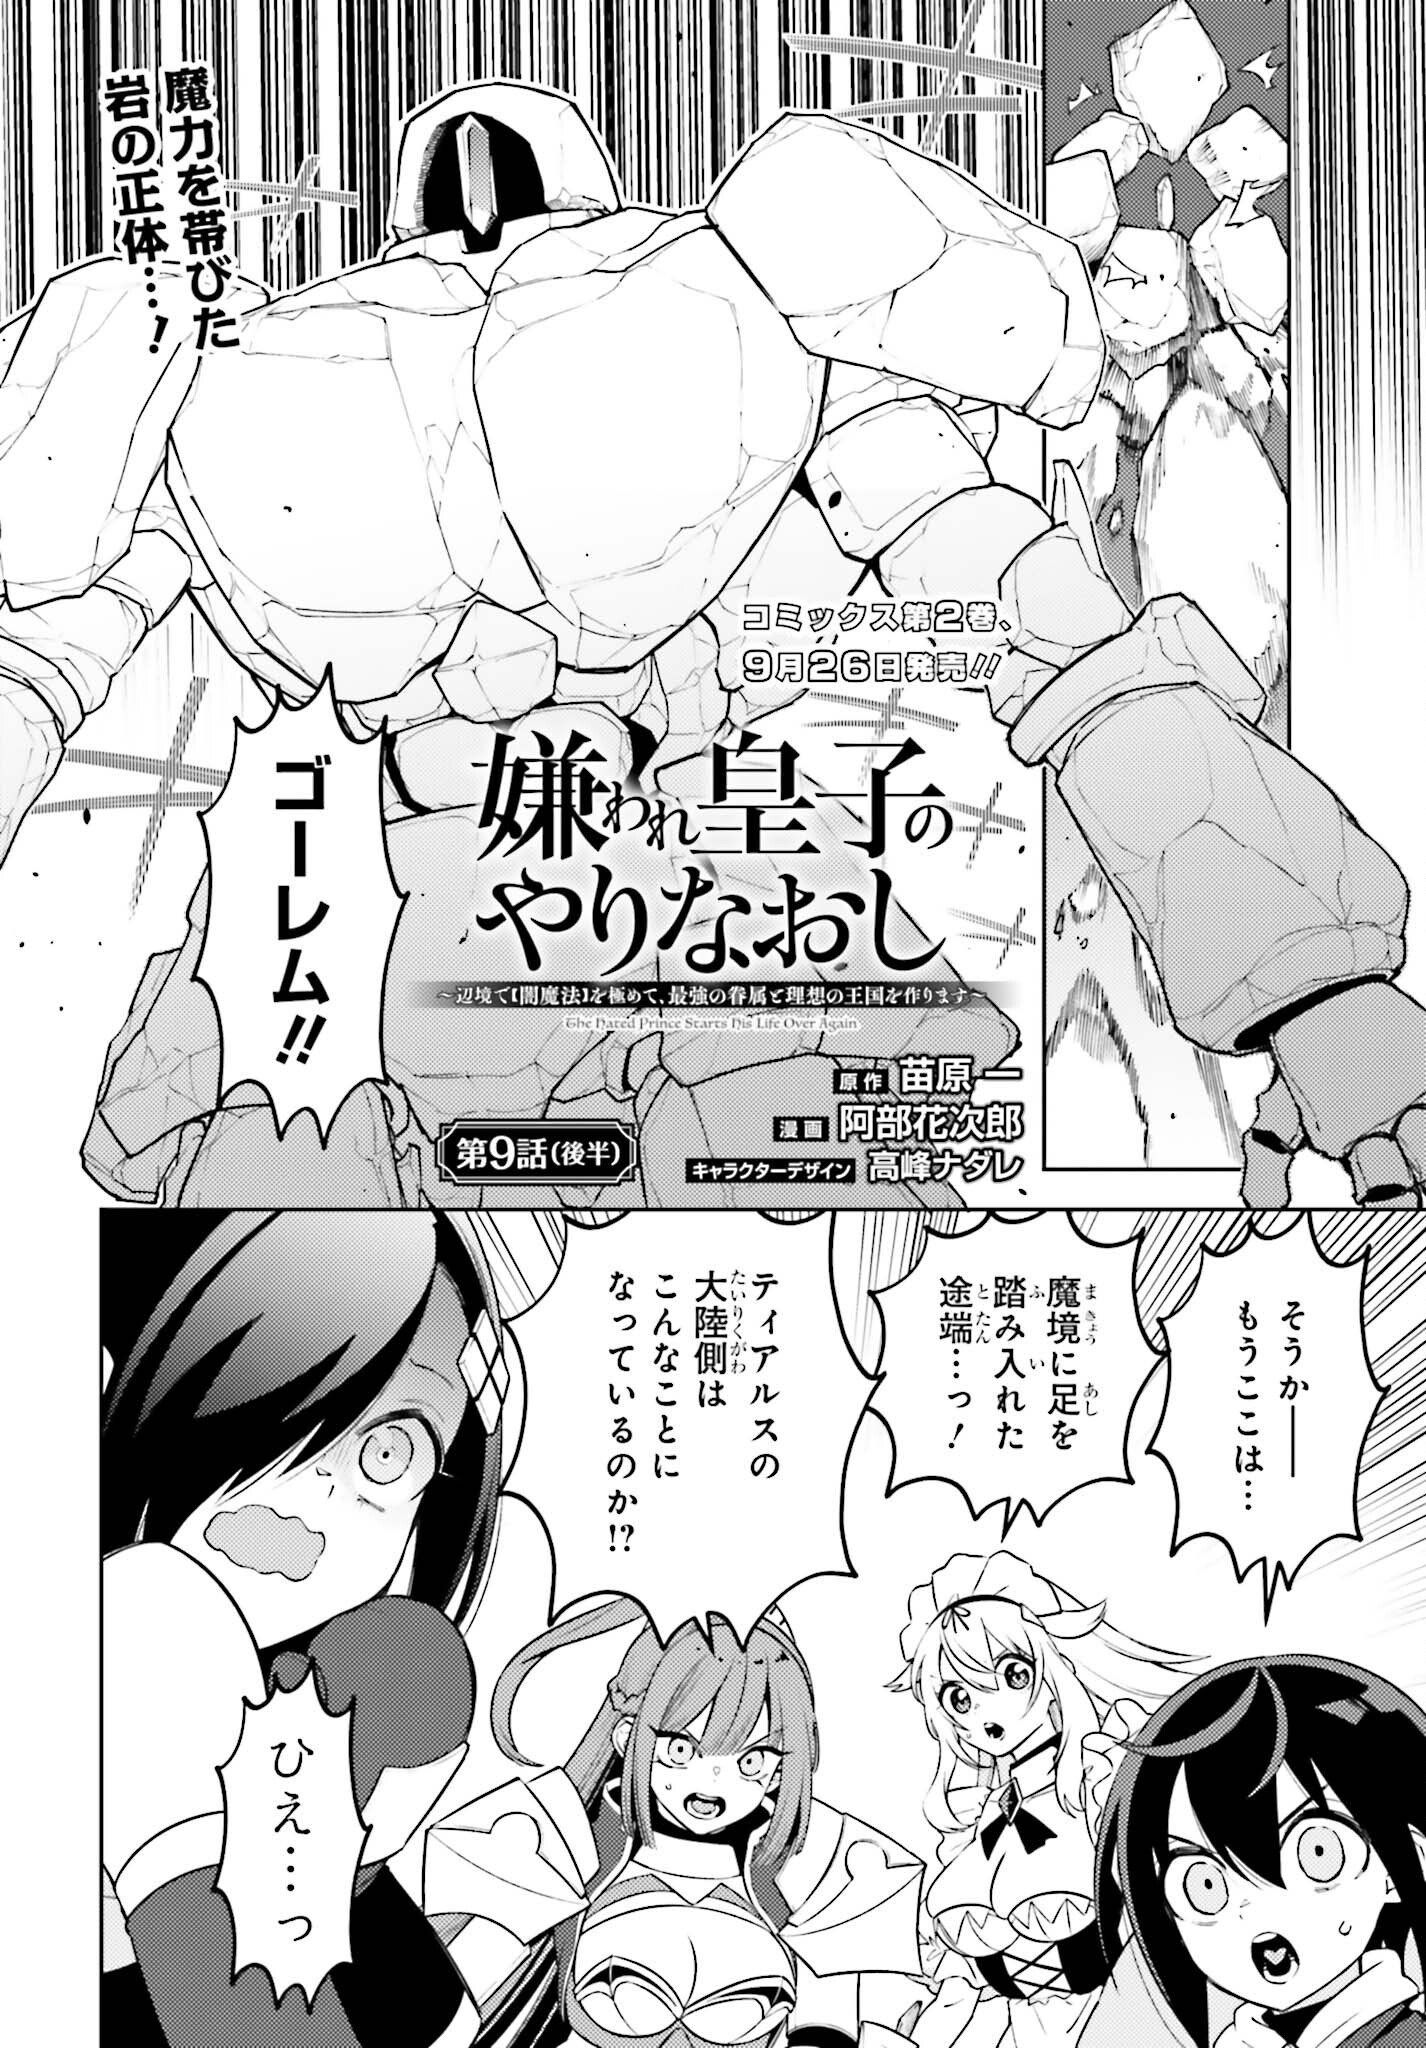 Kiraware Ouji no Yarinaoshi - Chapter 9.2 - Page 1